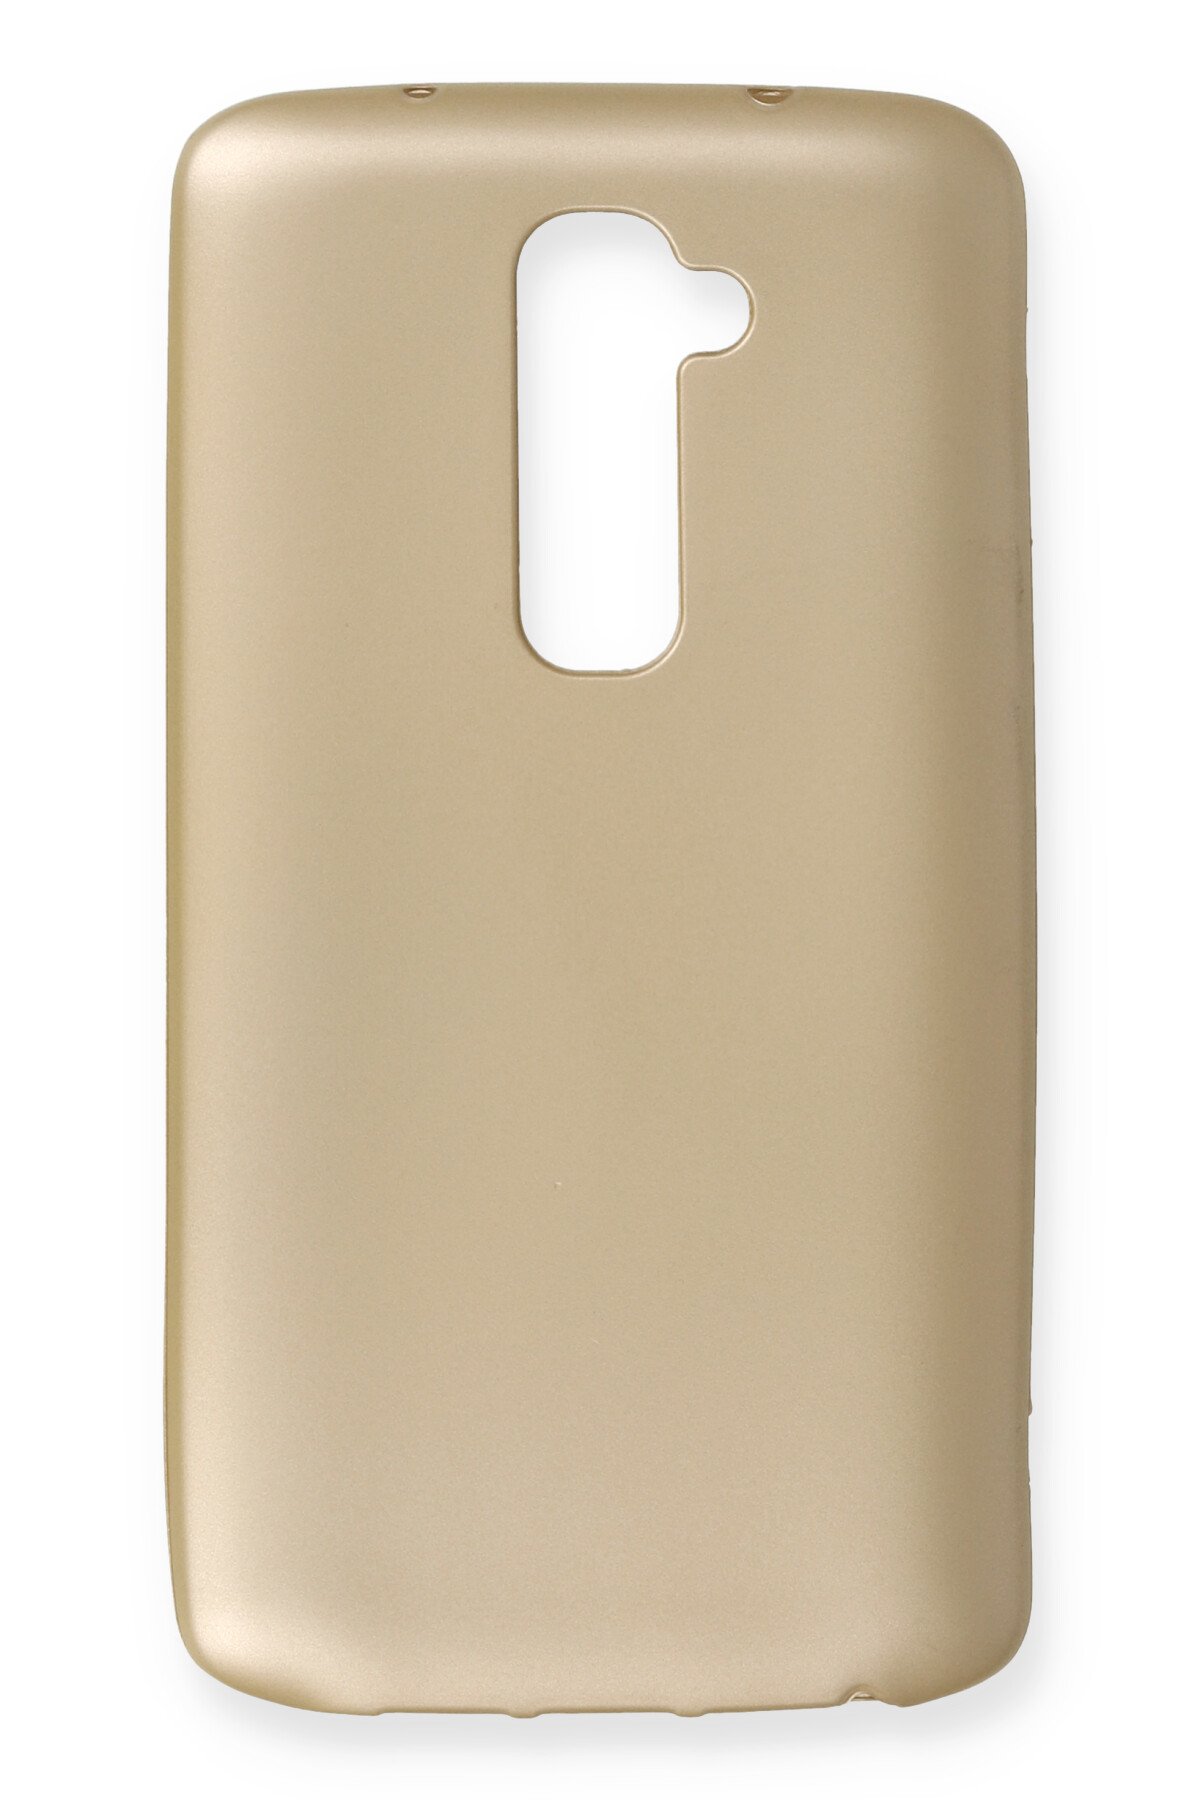 Newface LG G2 Kılıf First Silikon - Rose Gold